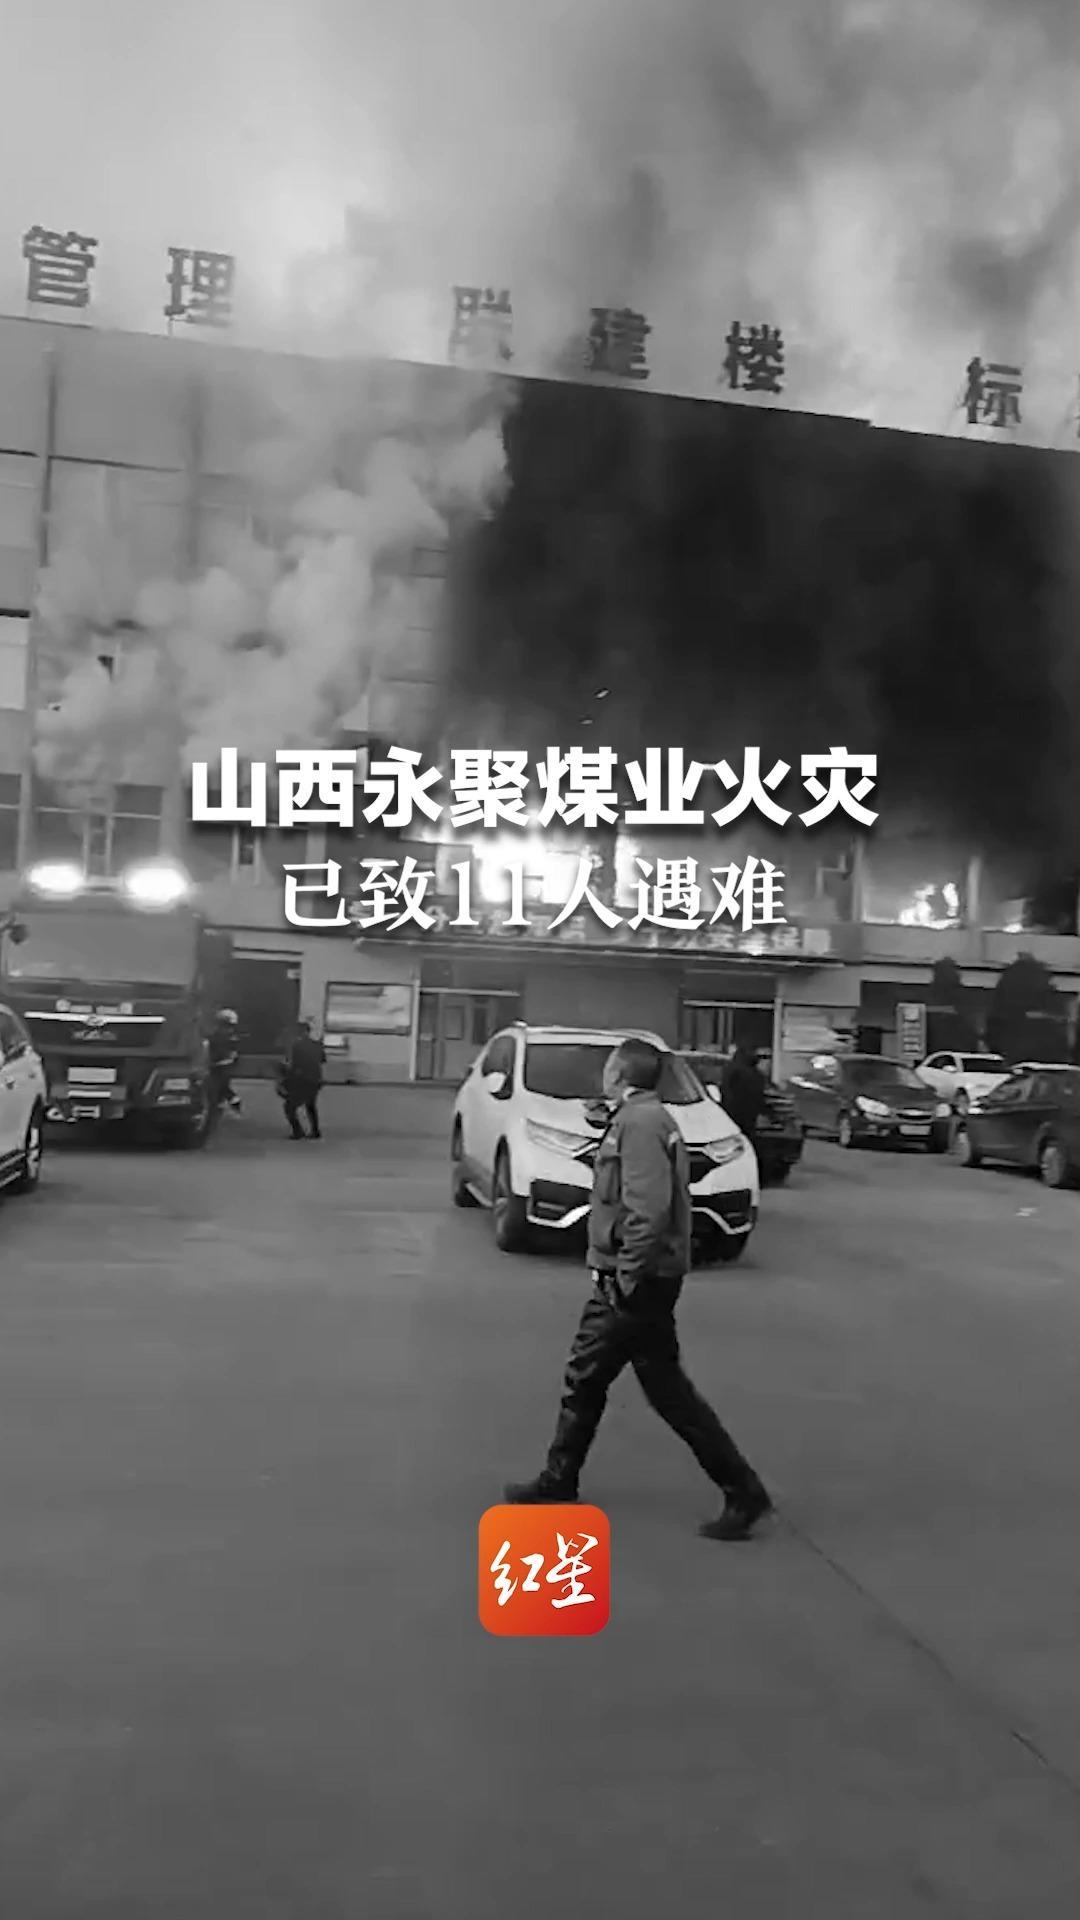 山西太原台骀山景区火灾13人遇难 节前当地曾做过消防检查 - 封面新闻